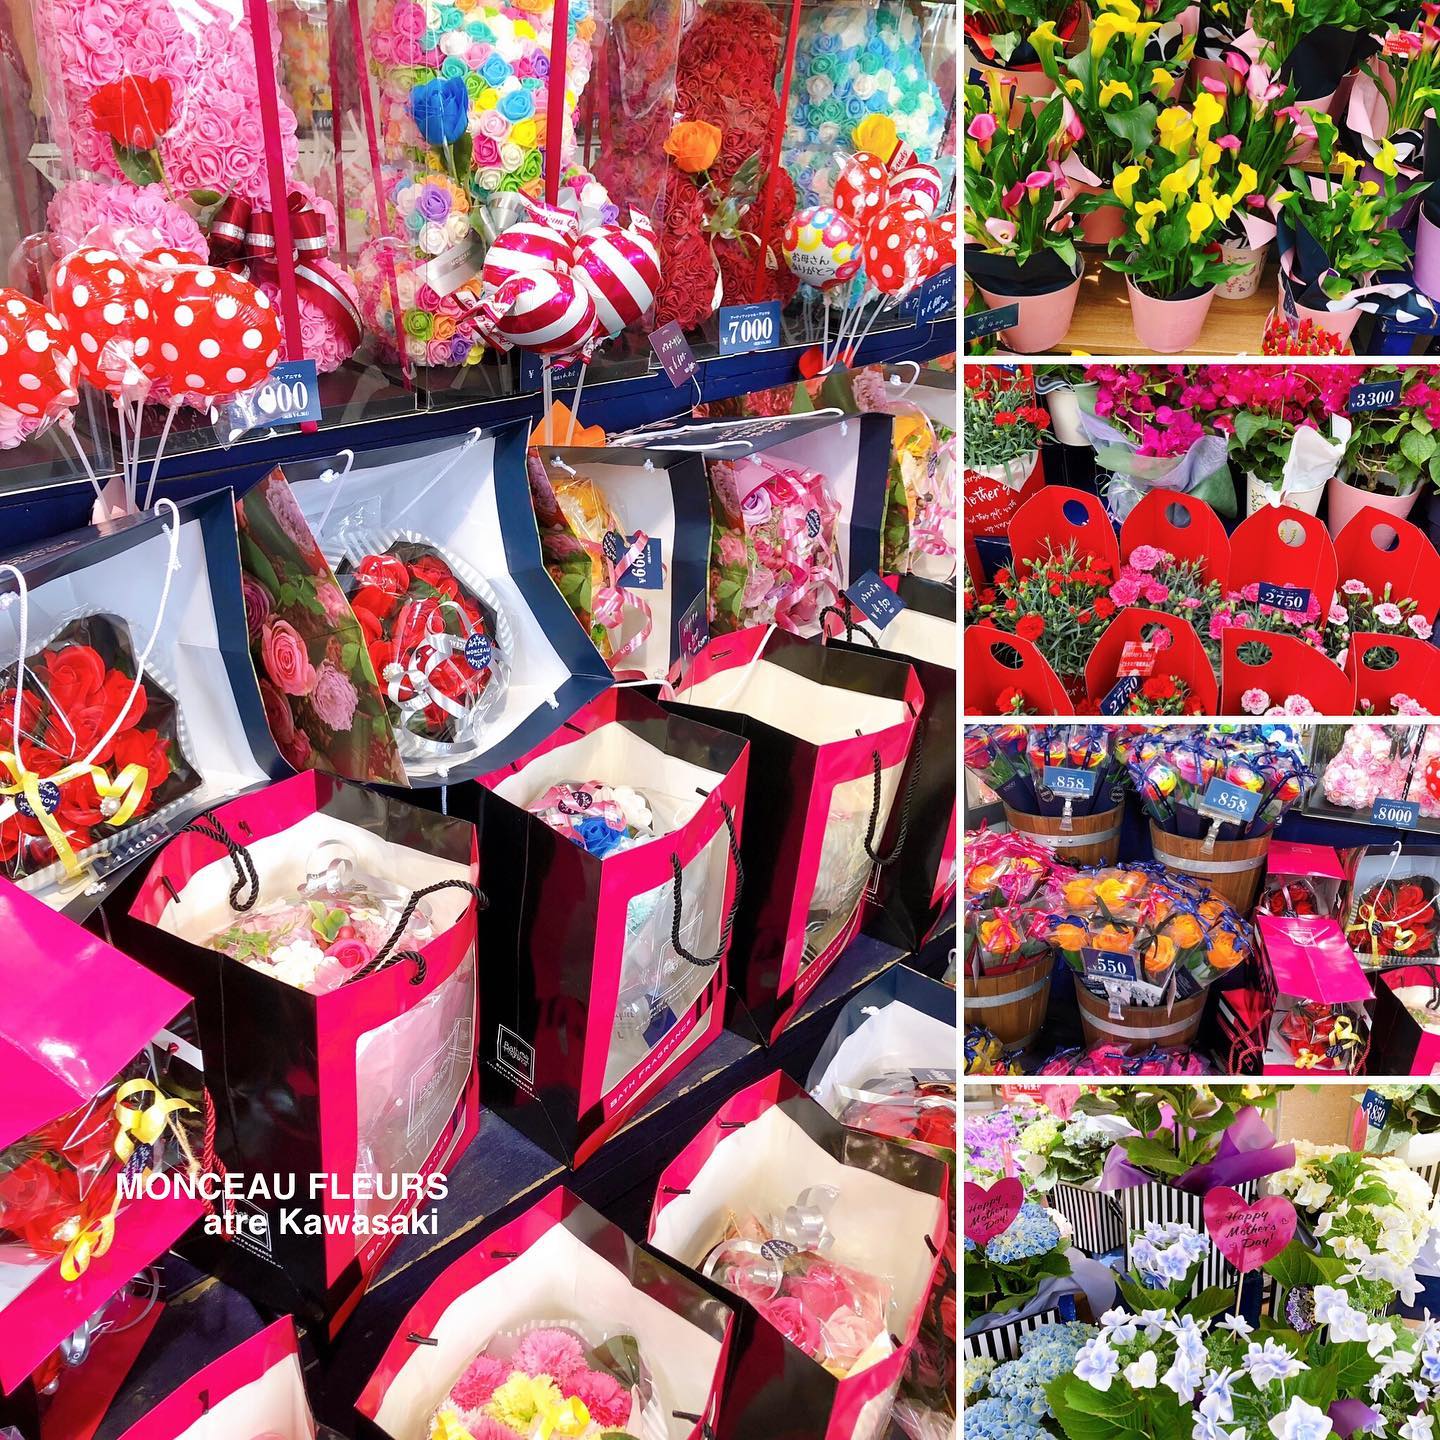 本日は、いよいよ『母の日』♪♪♪
・　
お母さんに、日頃の感謝の気持ちを込めてお花を贈りましょう^_^！！
・
最近は"カーネーション"だけでなく、
皆さん"思い思いのお花"を贈られる方も多いようです！
・
当店では、
etc…
・
たくさんの"母の日"のお花を
たっぷりご用意しております！
・
川崎・横浜エリアのお客様は、是非是非！
『母の日のプレゼント』を探しにご来店なさって下さい！
・
スタッフ一同お客様のご来店を心よりお待ちしております^_^
・
・
本日は、
10:00-20:00まで営業致します♪
・
・
#パリ
・
お気軽にお問い合わせください♪
★★★★★★★★★★★★★★★
【モンソーフルール アトレ川崎店】
〒210-0007
神奈川県川崎市川崎区駅前本町26-1
アトレ川崎1F
TEL&FAX:044-200-6701
営業時間:10:00〜20:00
（まん延防止措置の為、時短営業中です。）
★★★★★★★★★★★★★★★
モンソーフルールはパリ発！
ヨーロッパ有数のフラワーチェーンブランドです♪